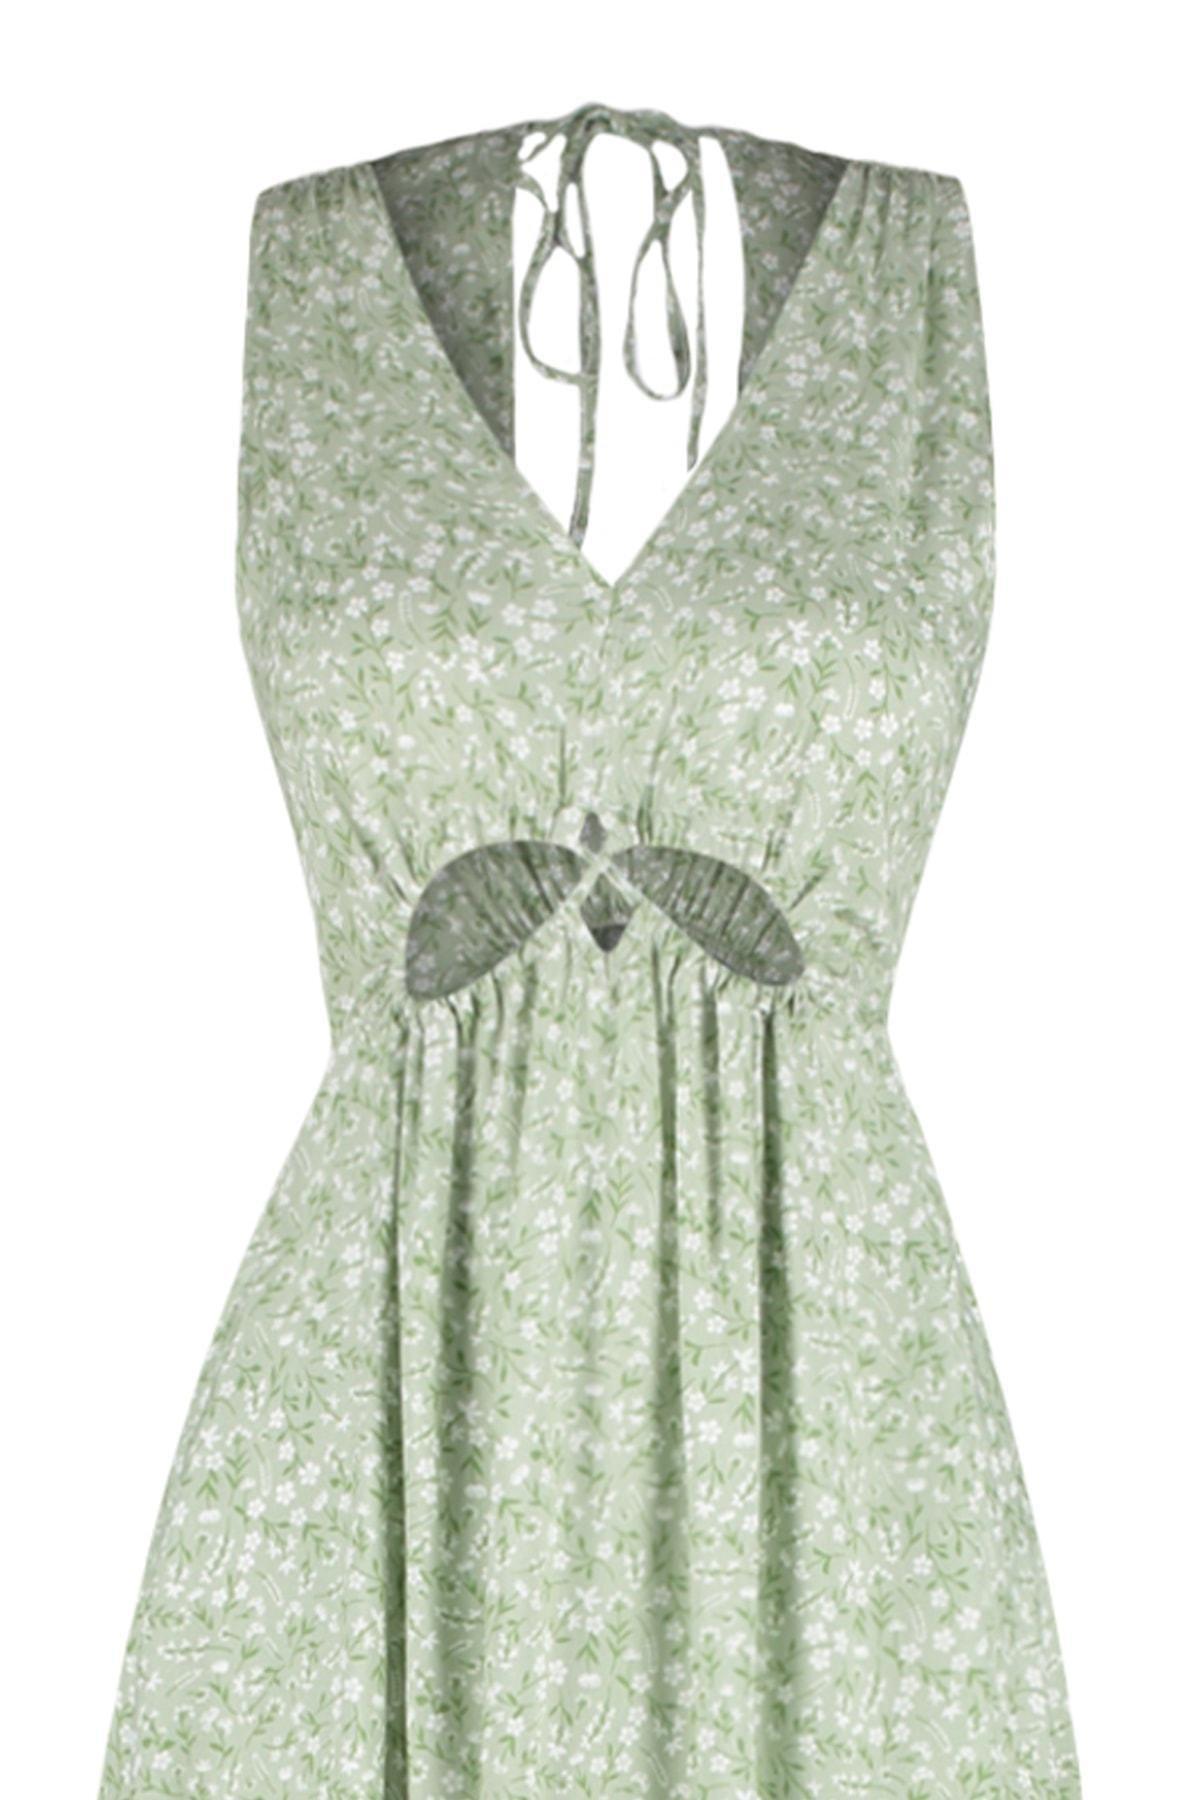 Trendyol - Green Floral V-Neck Shift Dress